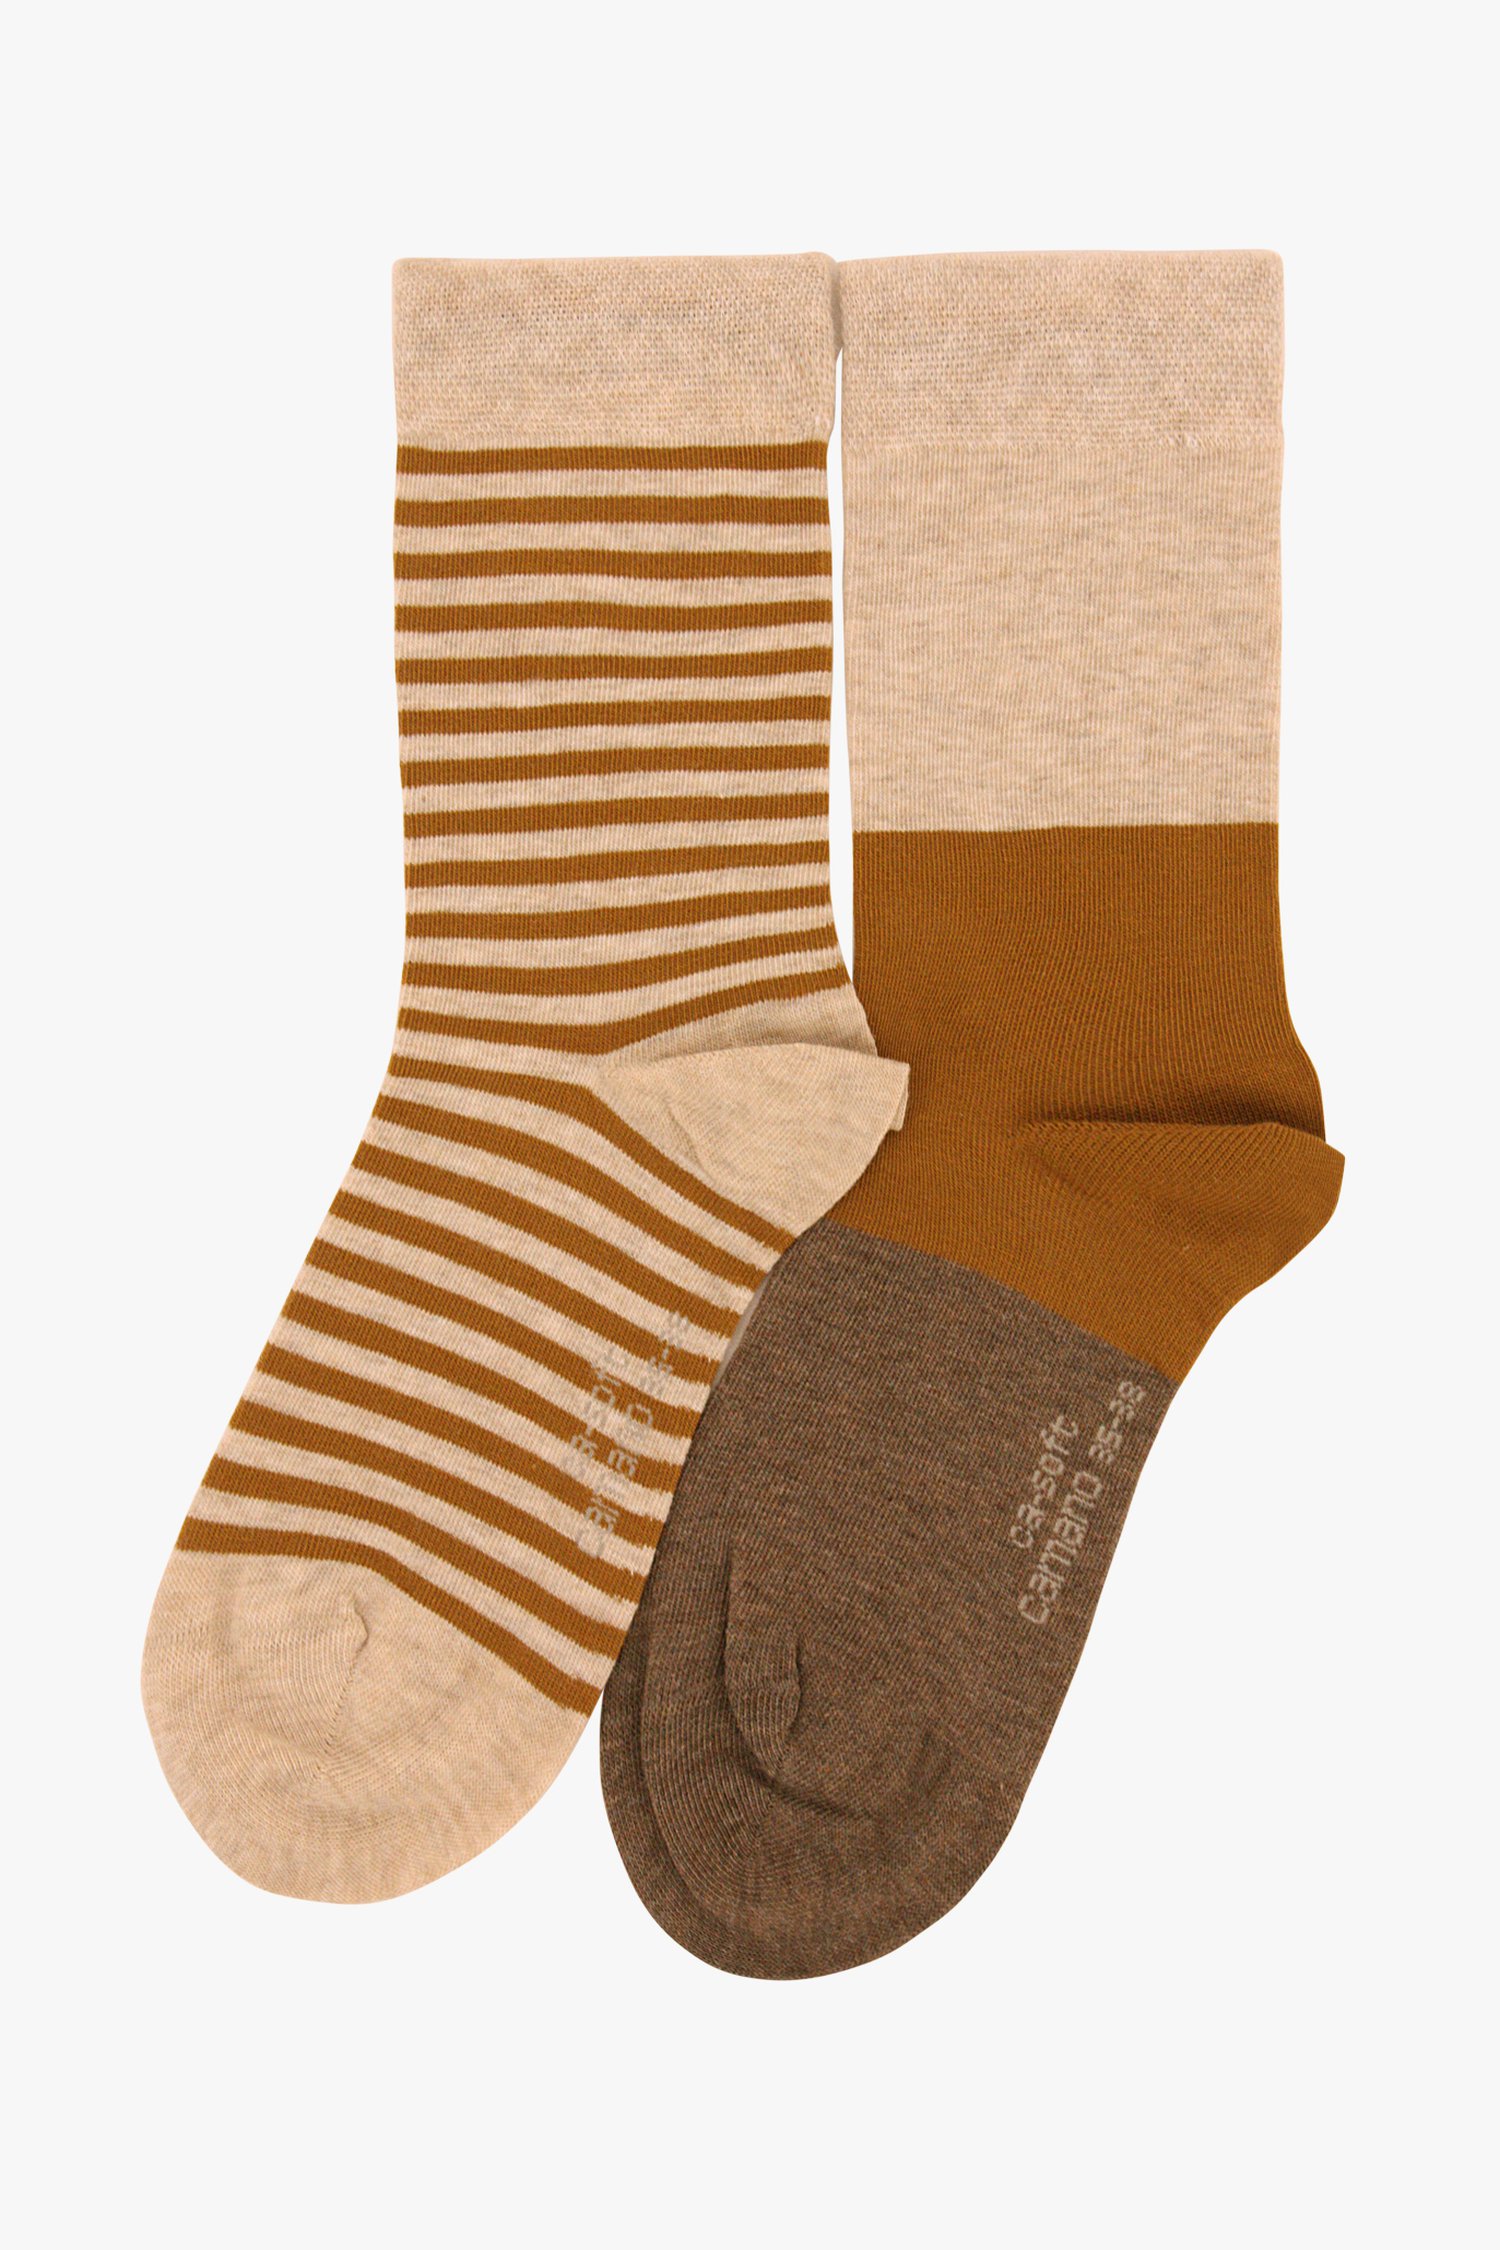 definitief elegant Kilimanjaro Bruine & gestreepte sokken - 2 paar van Camano | 9702323 | e5